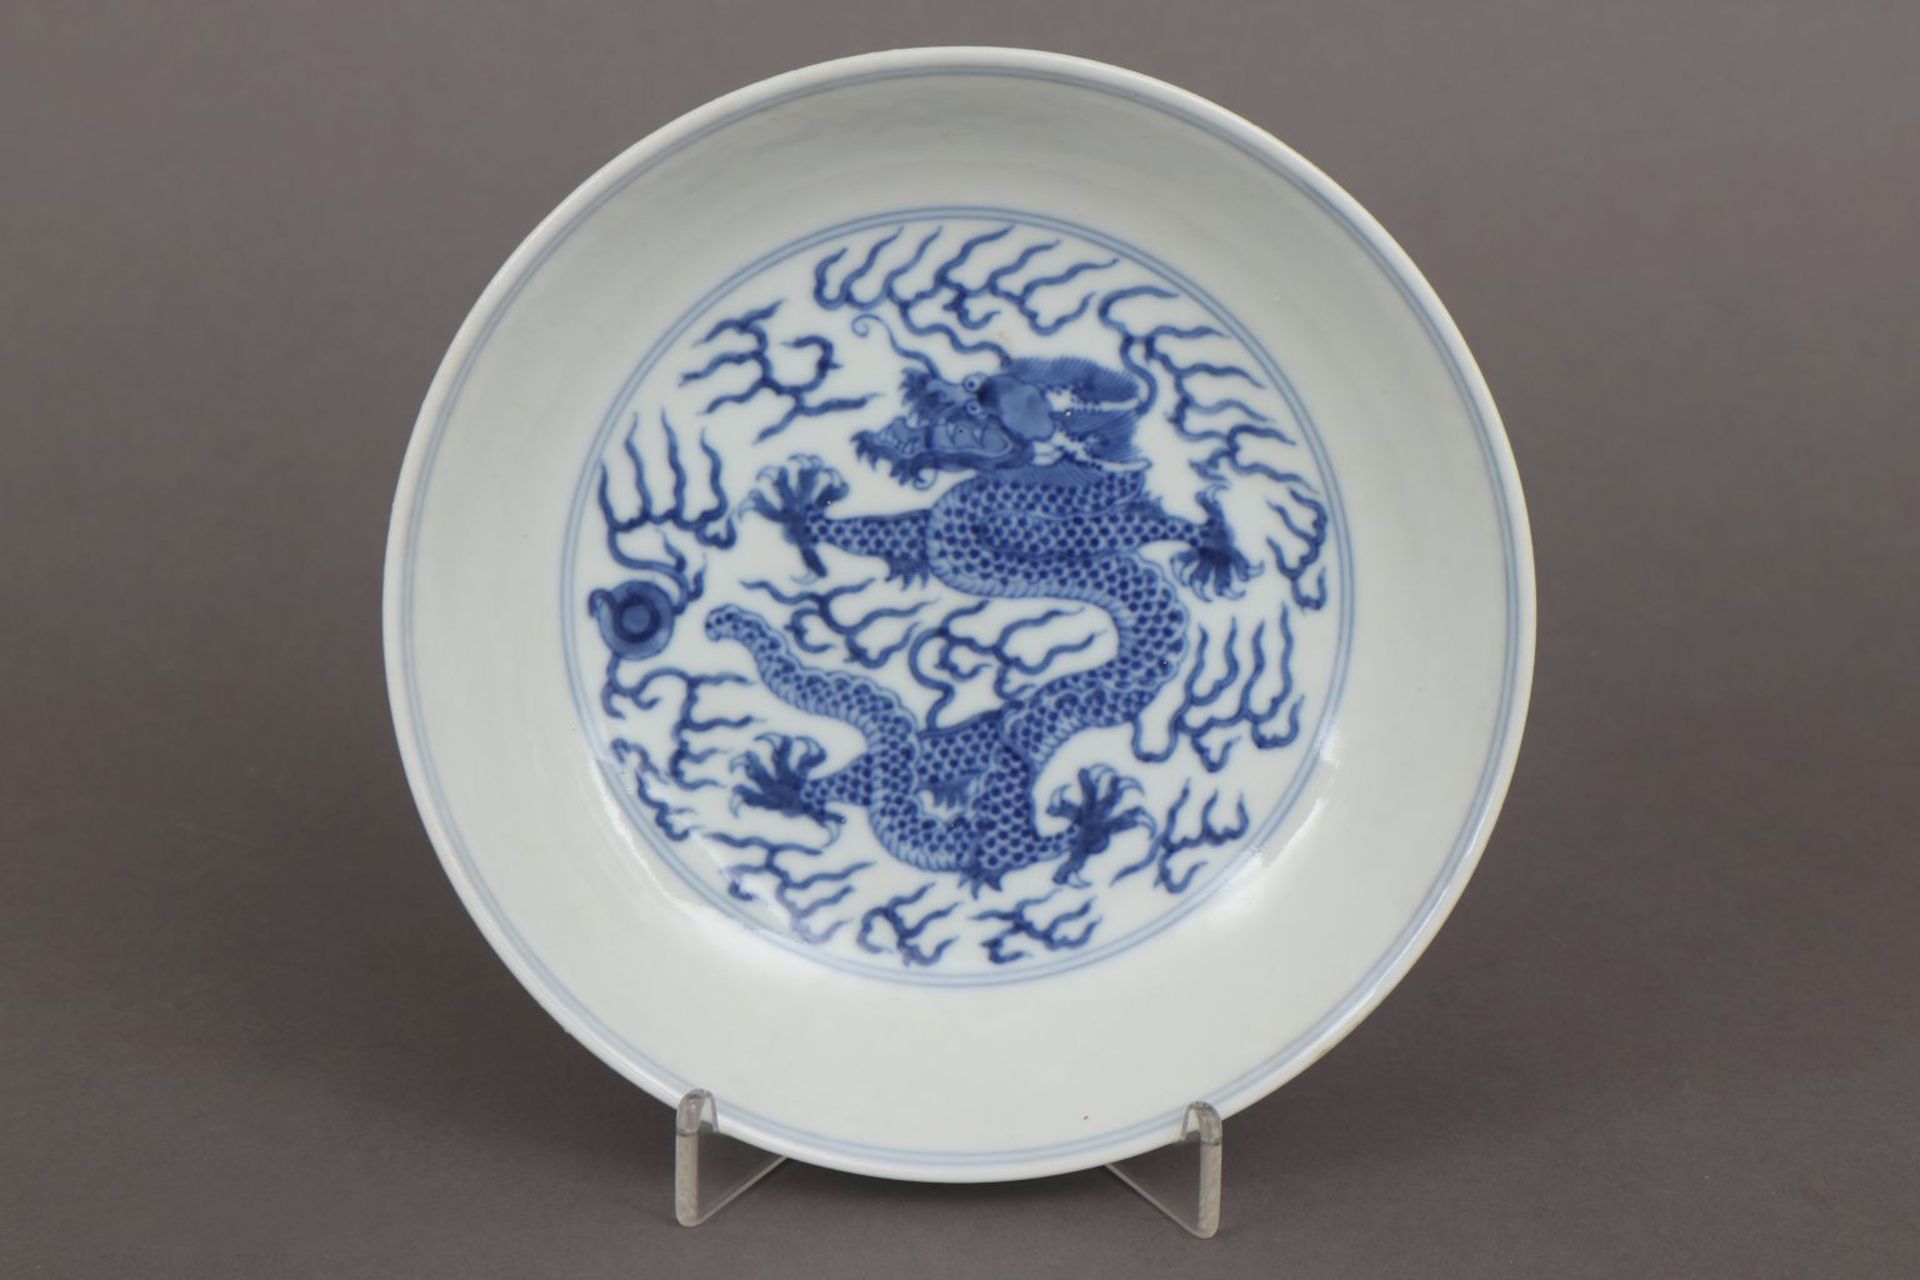 Chinesischer Porzellantellerglatte, leicht vertiefte Form, im Spiegel und auf der Außenwandung